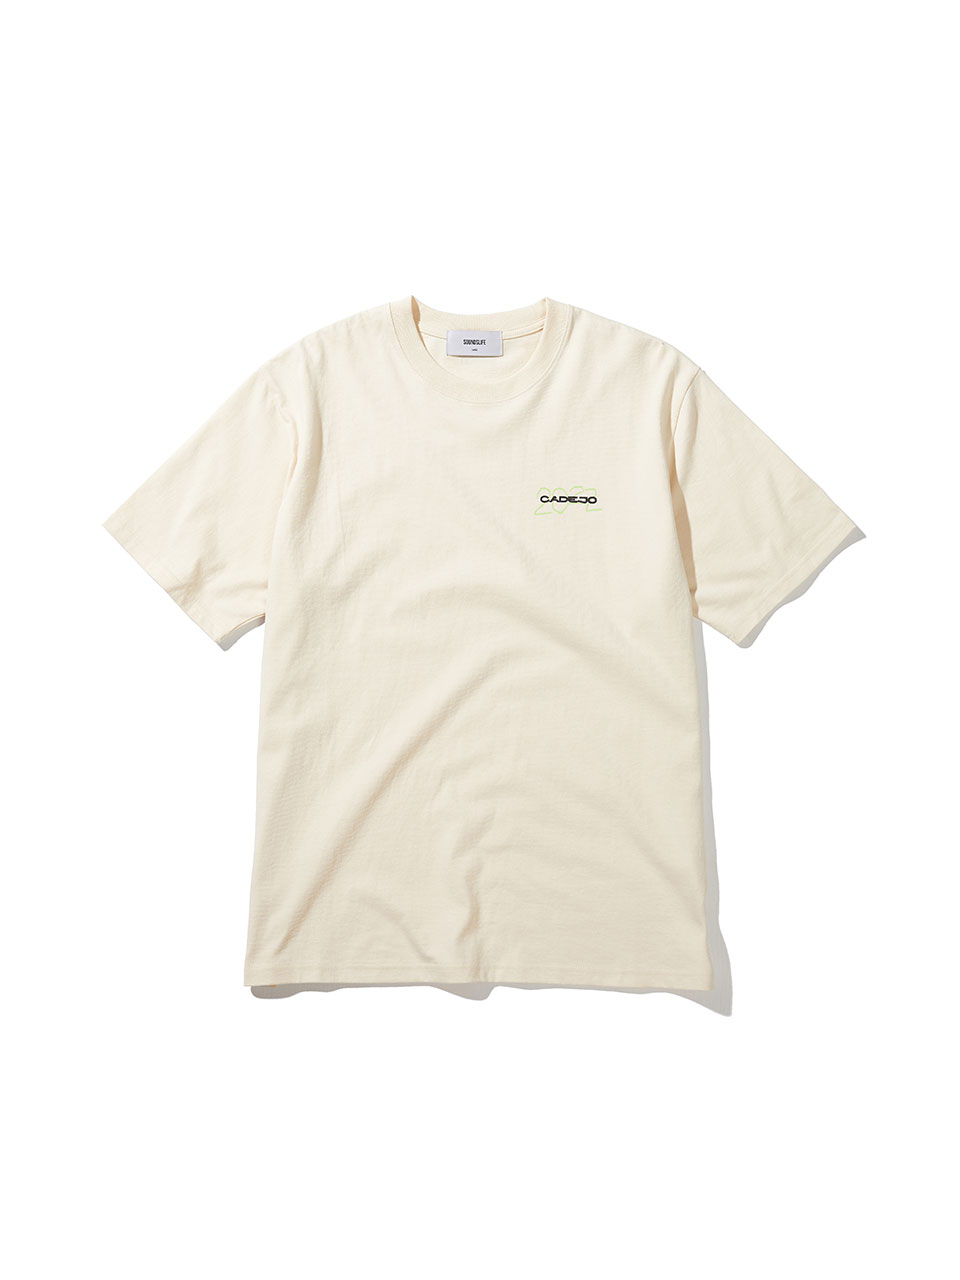 SOUNDSLIFE - CADEJO X SOUNDSLIFE Short Sleeve T-Shirt Ivory